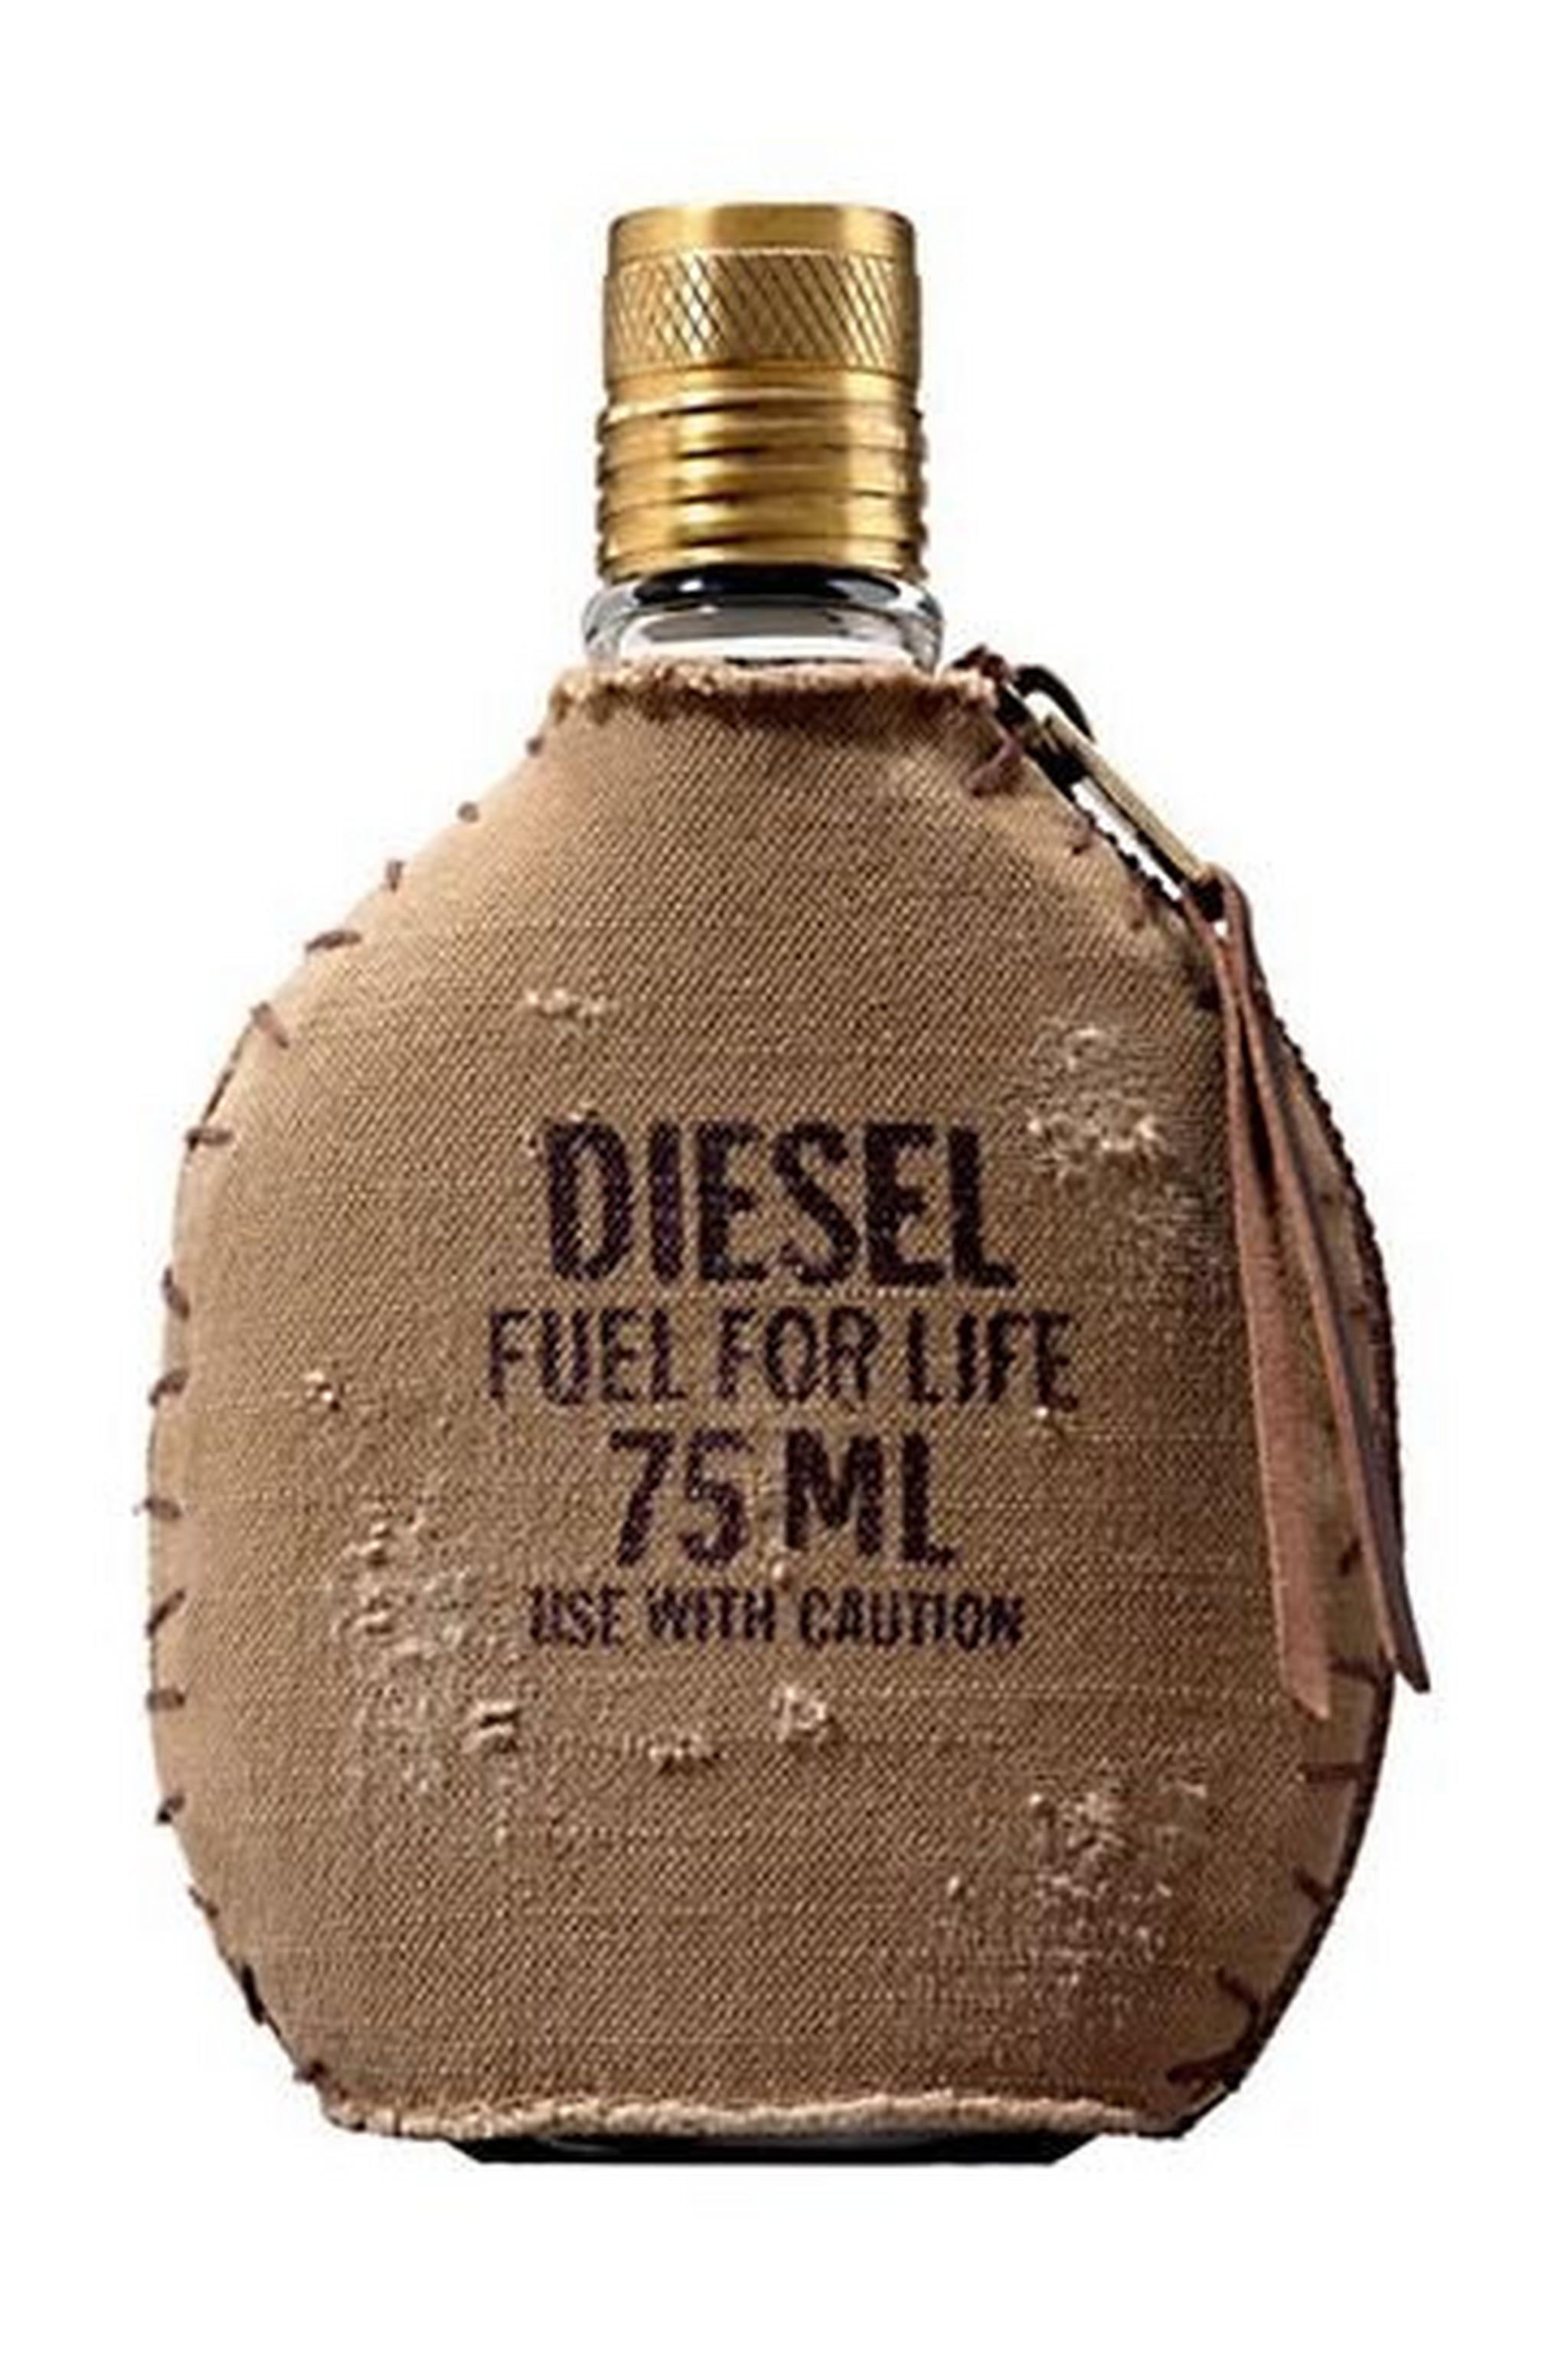 Diesel Fuel For Life Men 75ml EDT